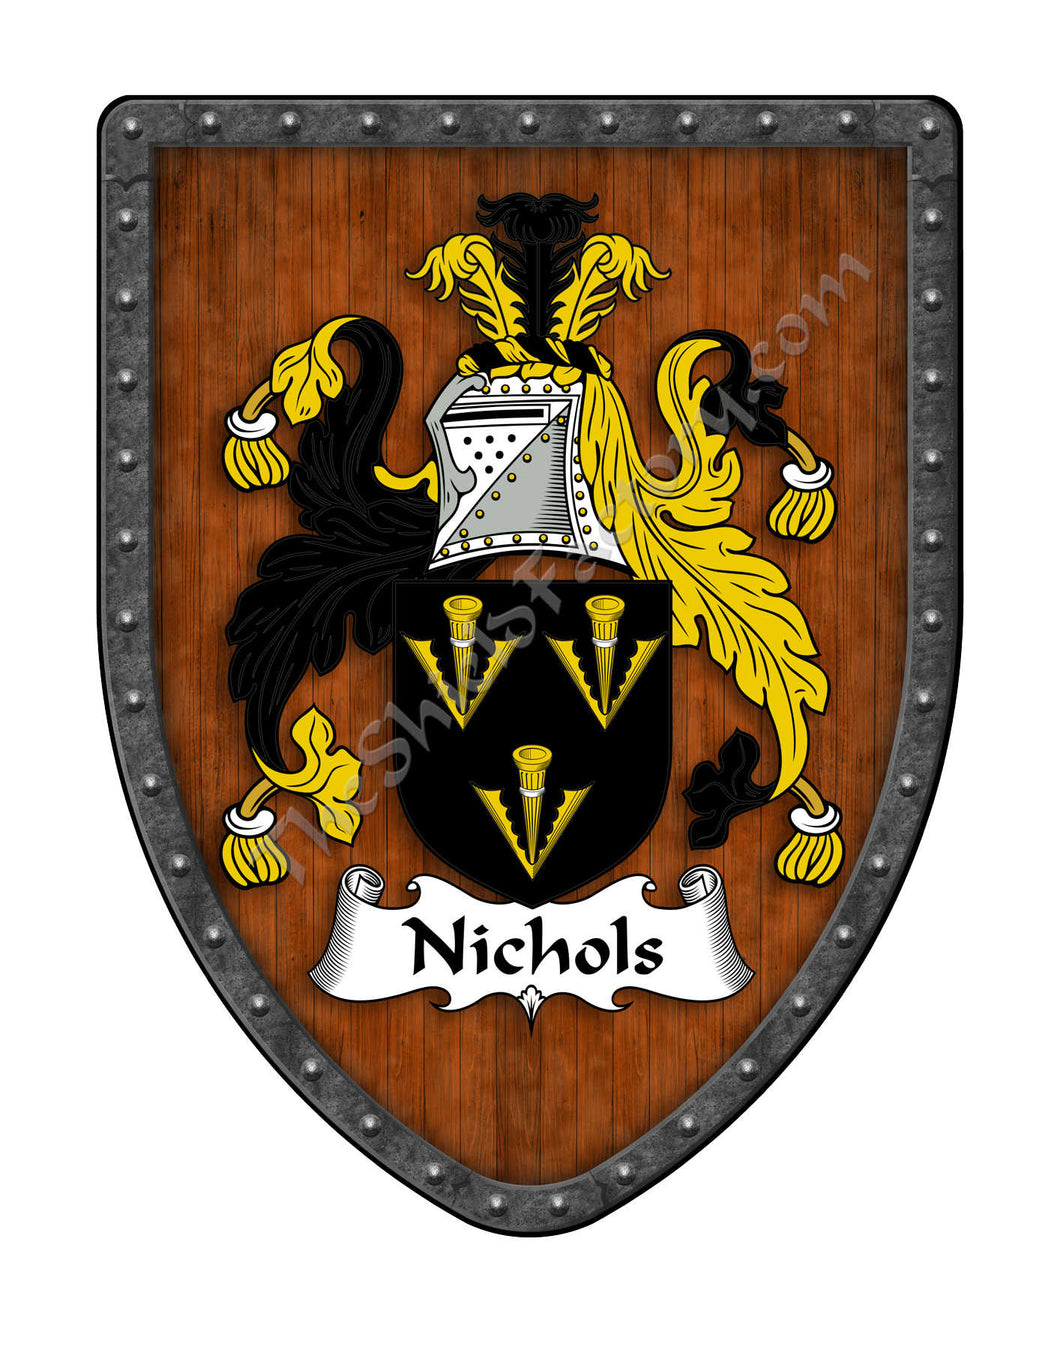 Nichols